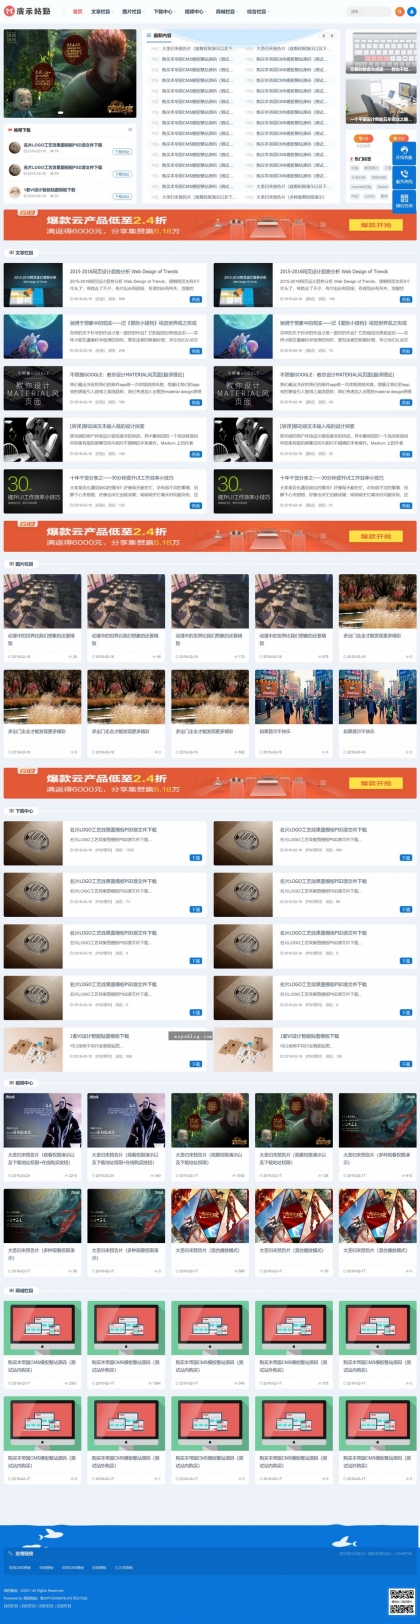 帝国CMS整站模板文章下载图片视频商城淘宝客自适应HTML5响应式